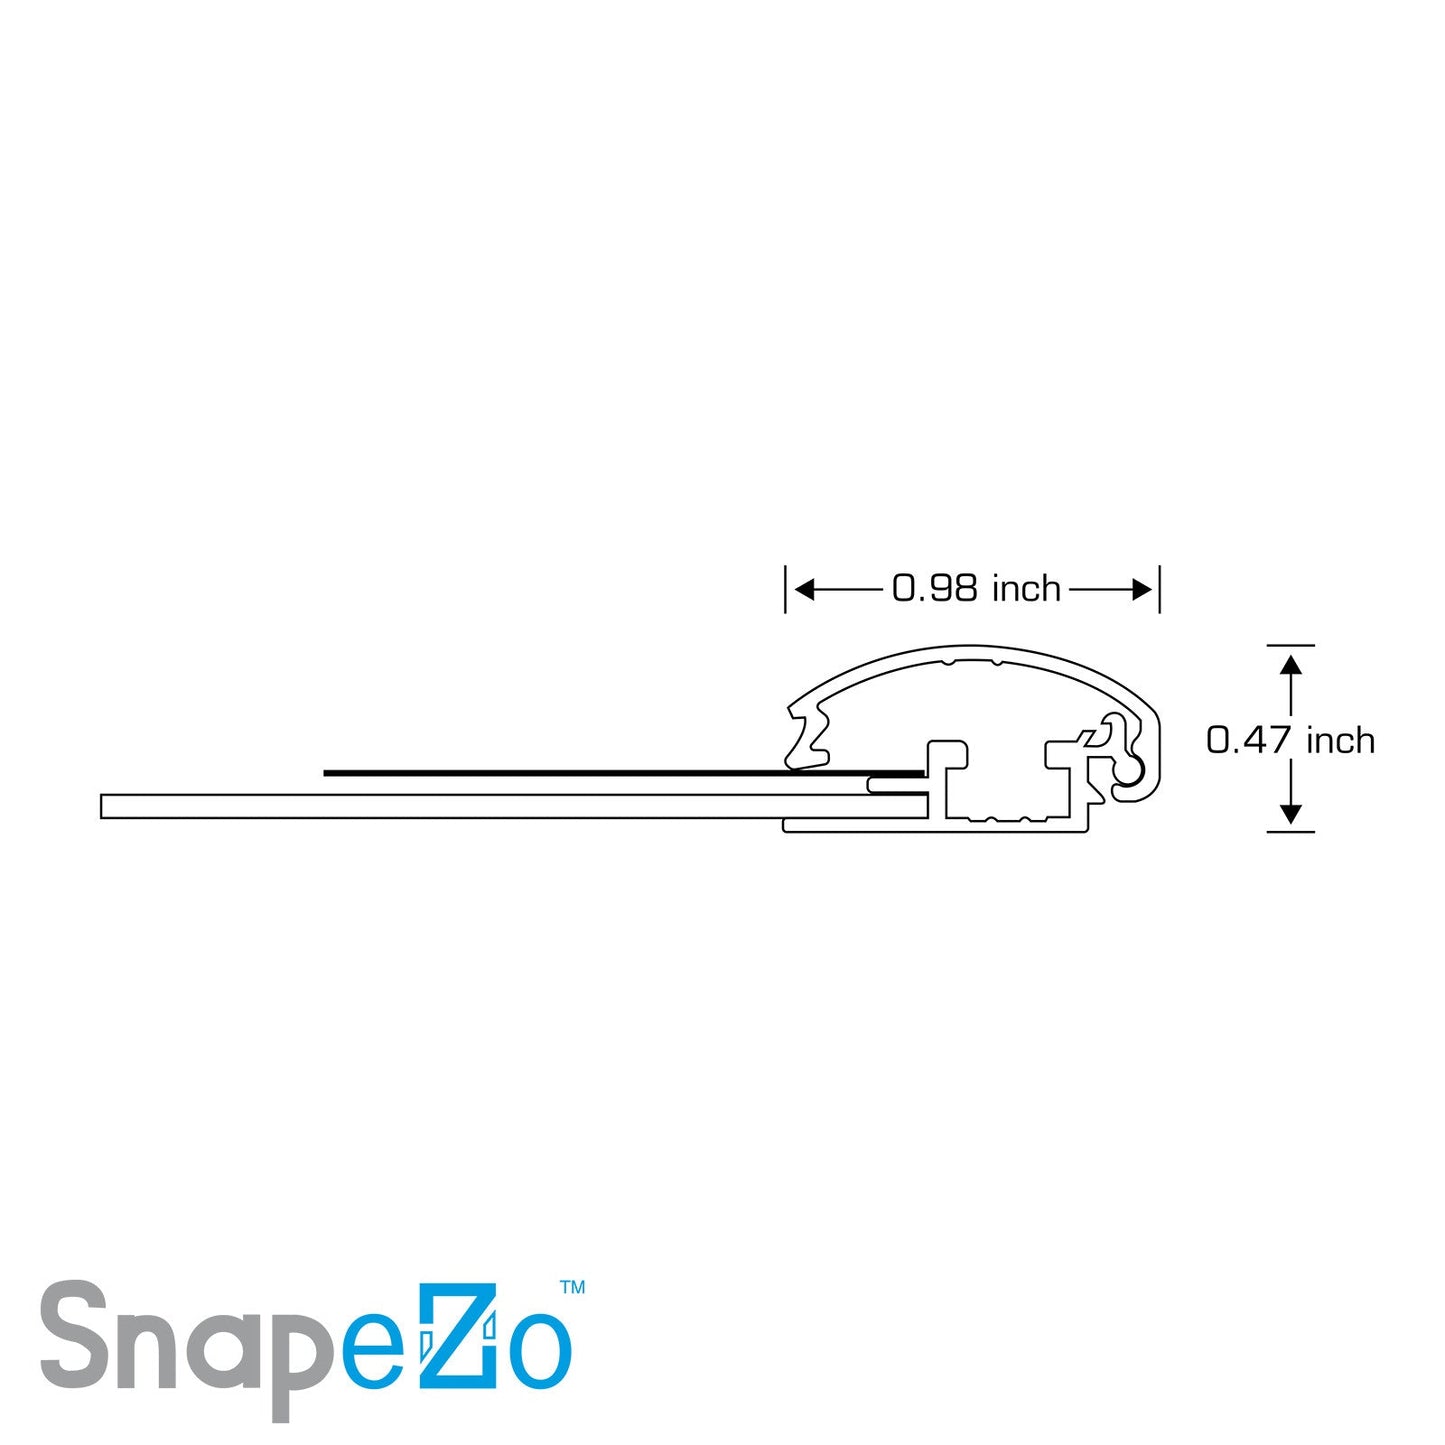 11x14 White SnapeZo® Snap Frame - 1" Profile